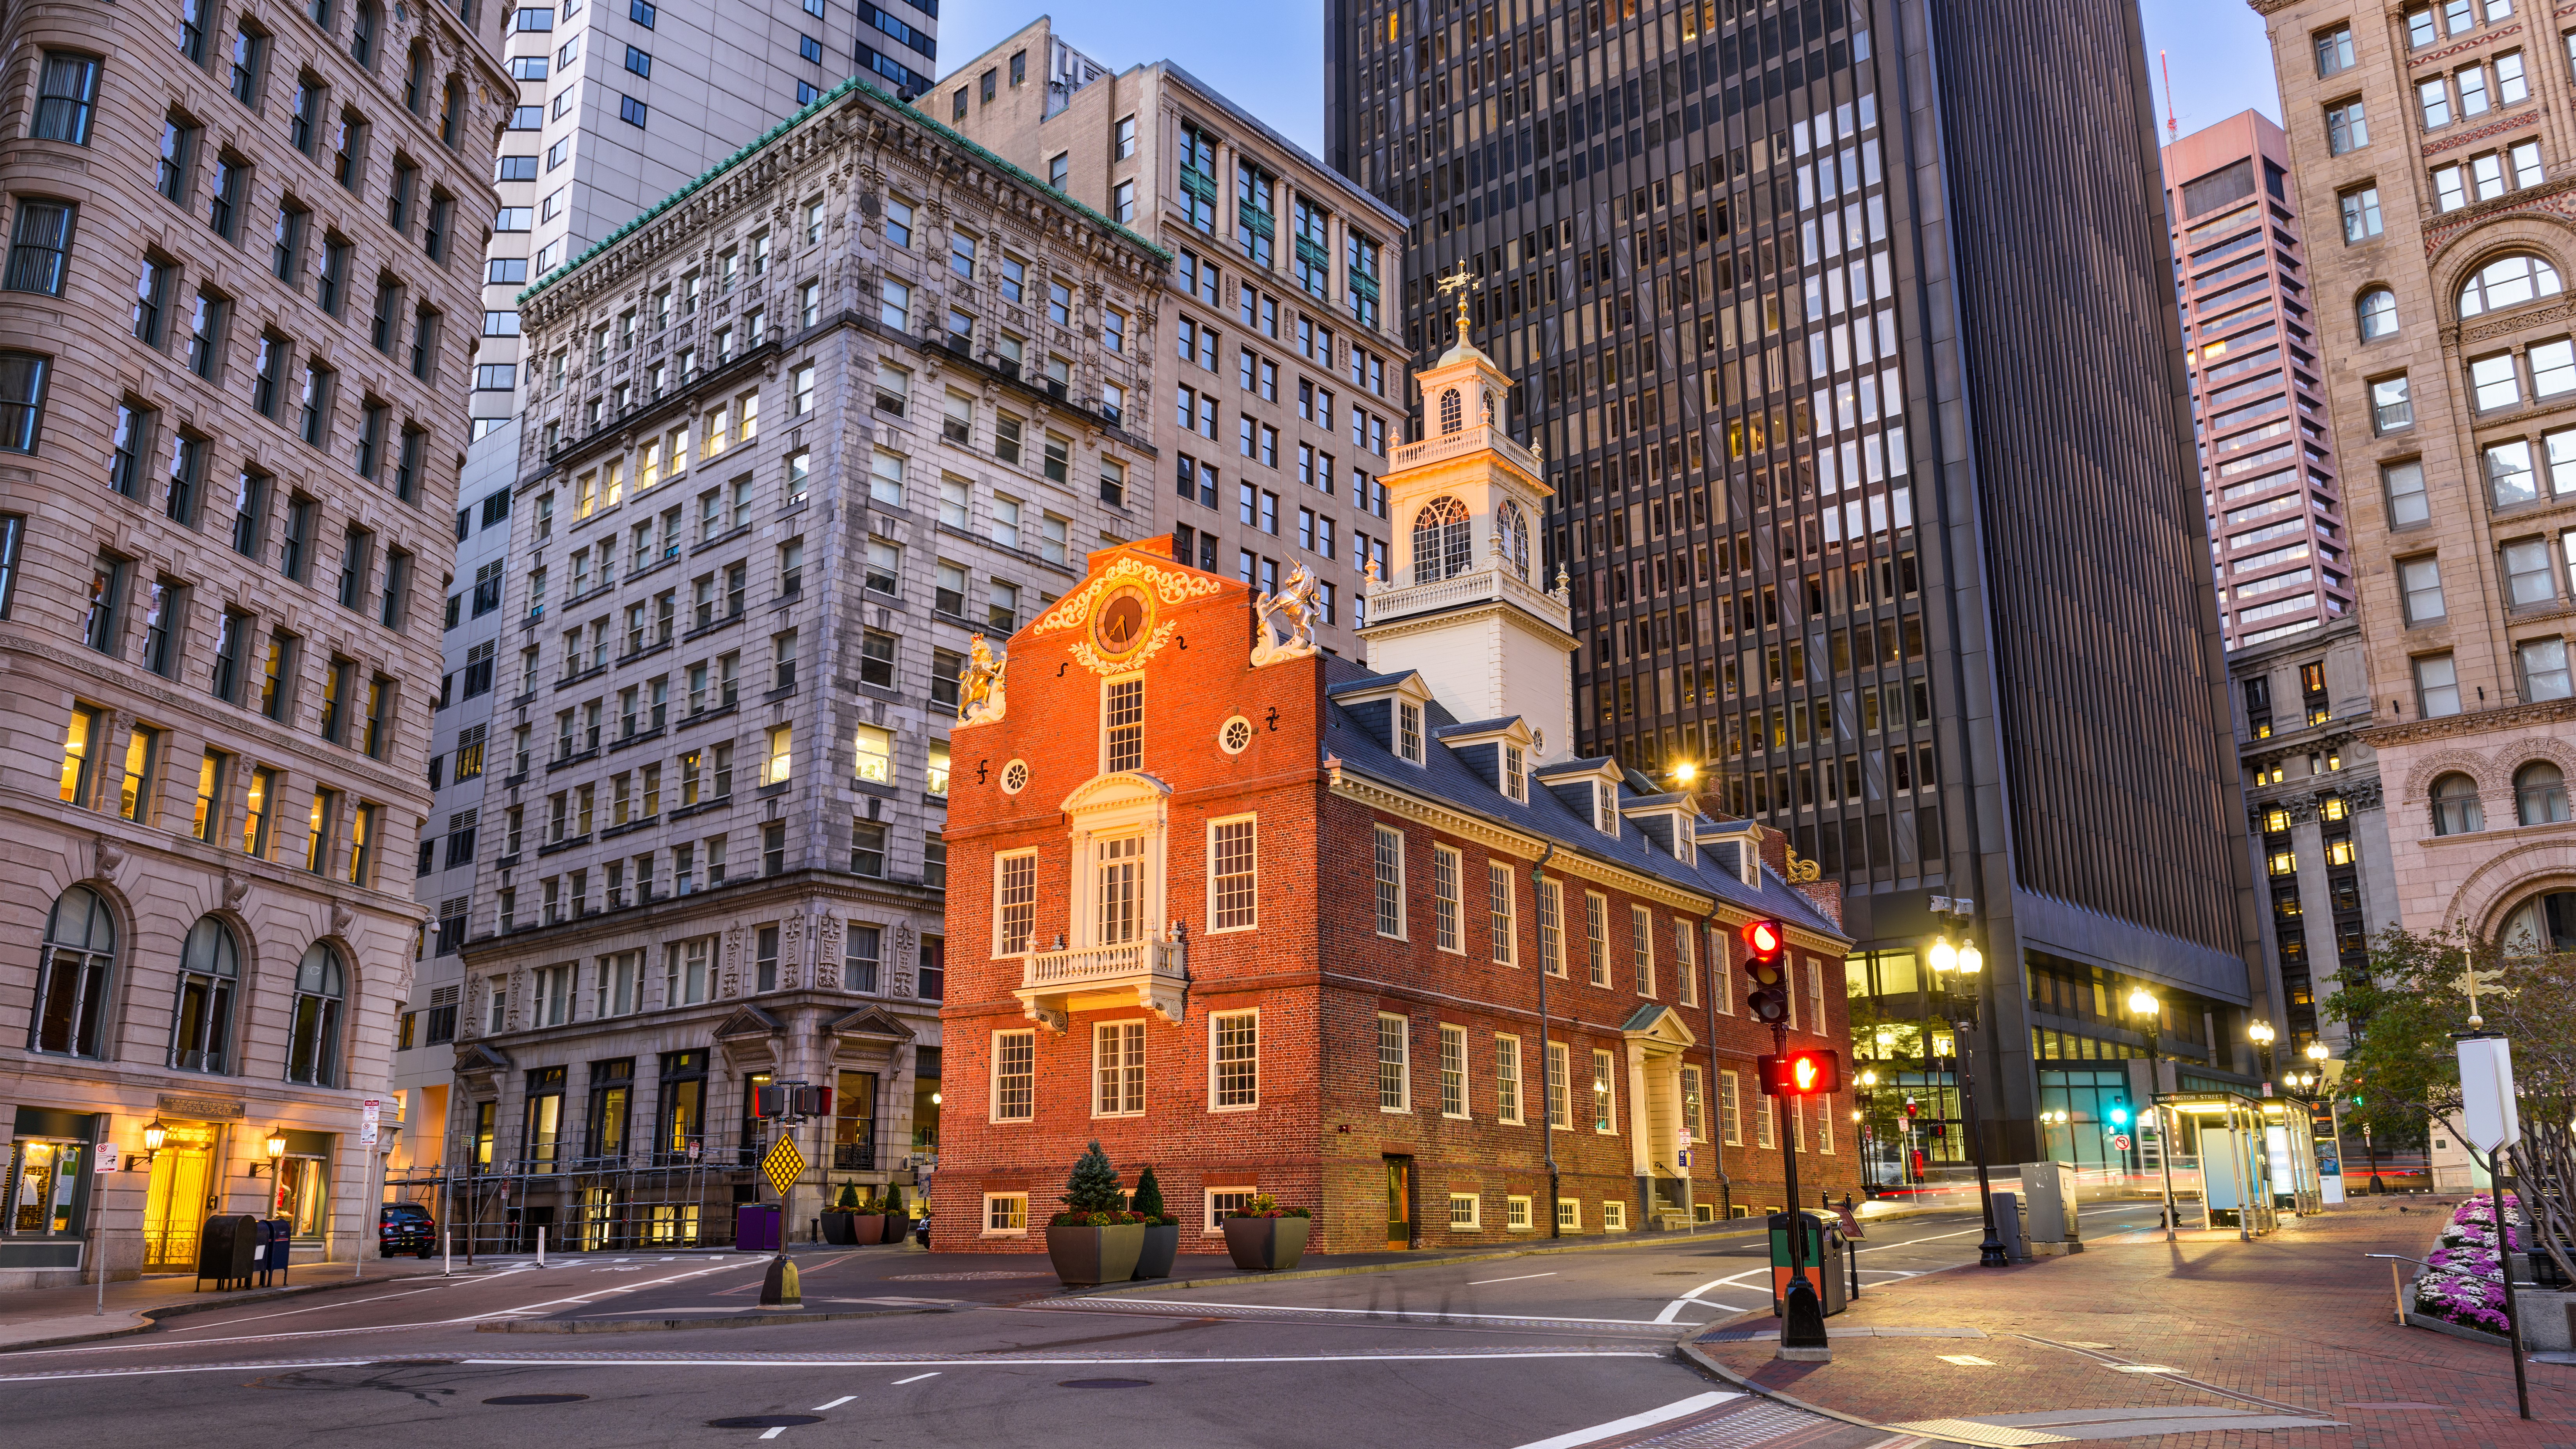 Old State House - Senior Trip to Boston